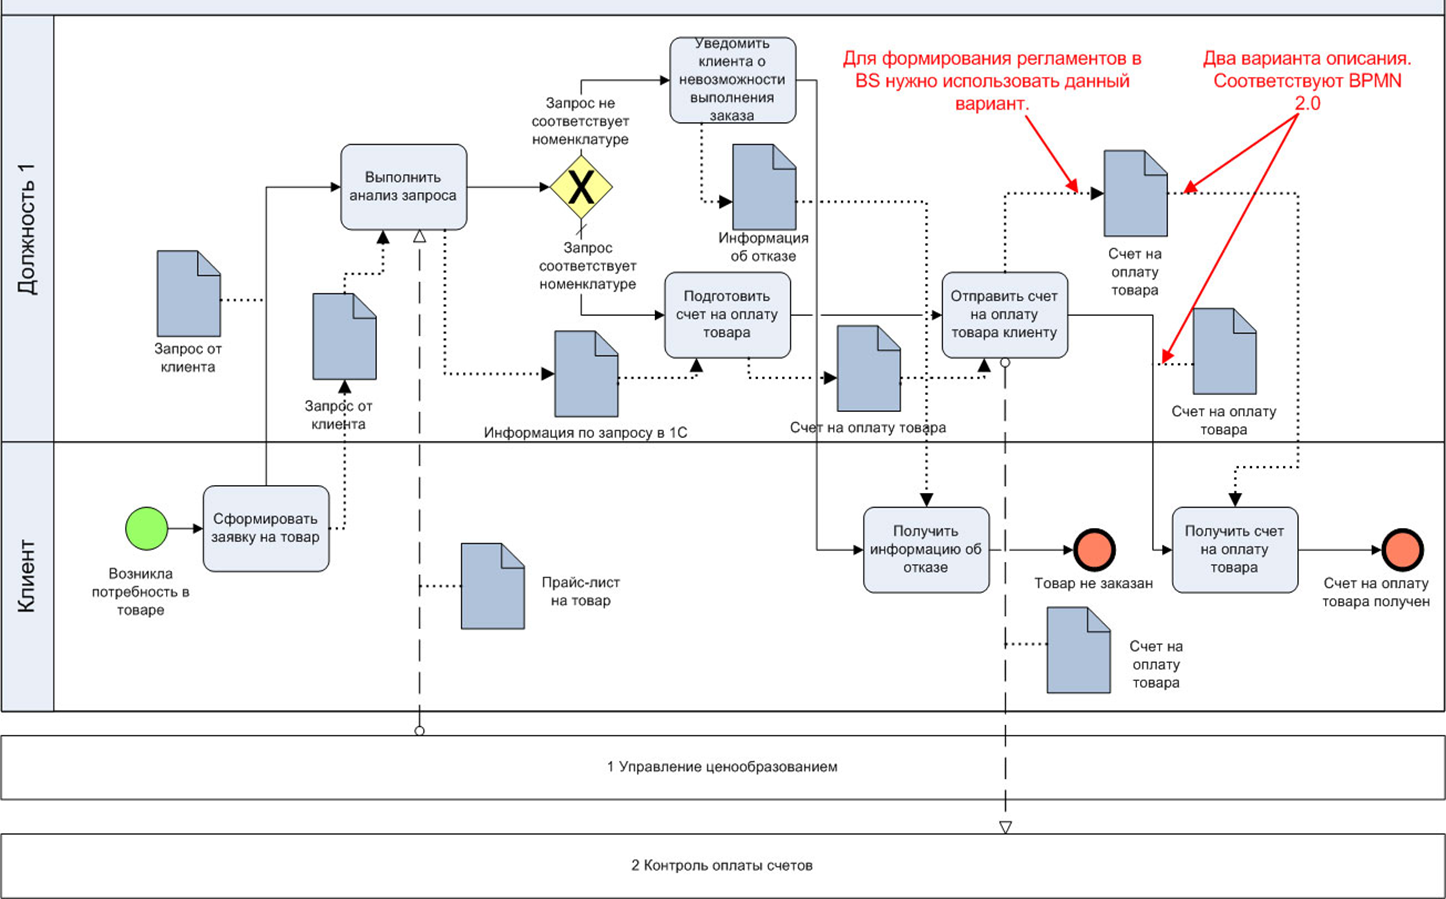 Схема процесса в нотации BPMN. Диаграмма бизнес процессов BPMN 2.0. Схема бизнес процесса в нотации BPMN. Бизнес процесс BPMN 2.0. Бизнес процесс информационное обеспечение